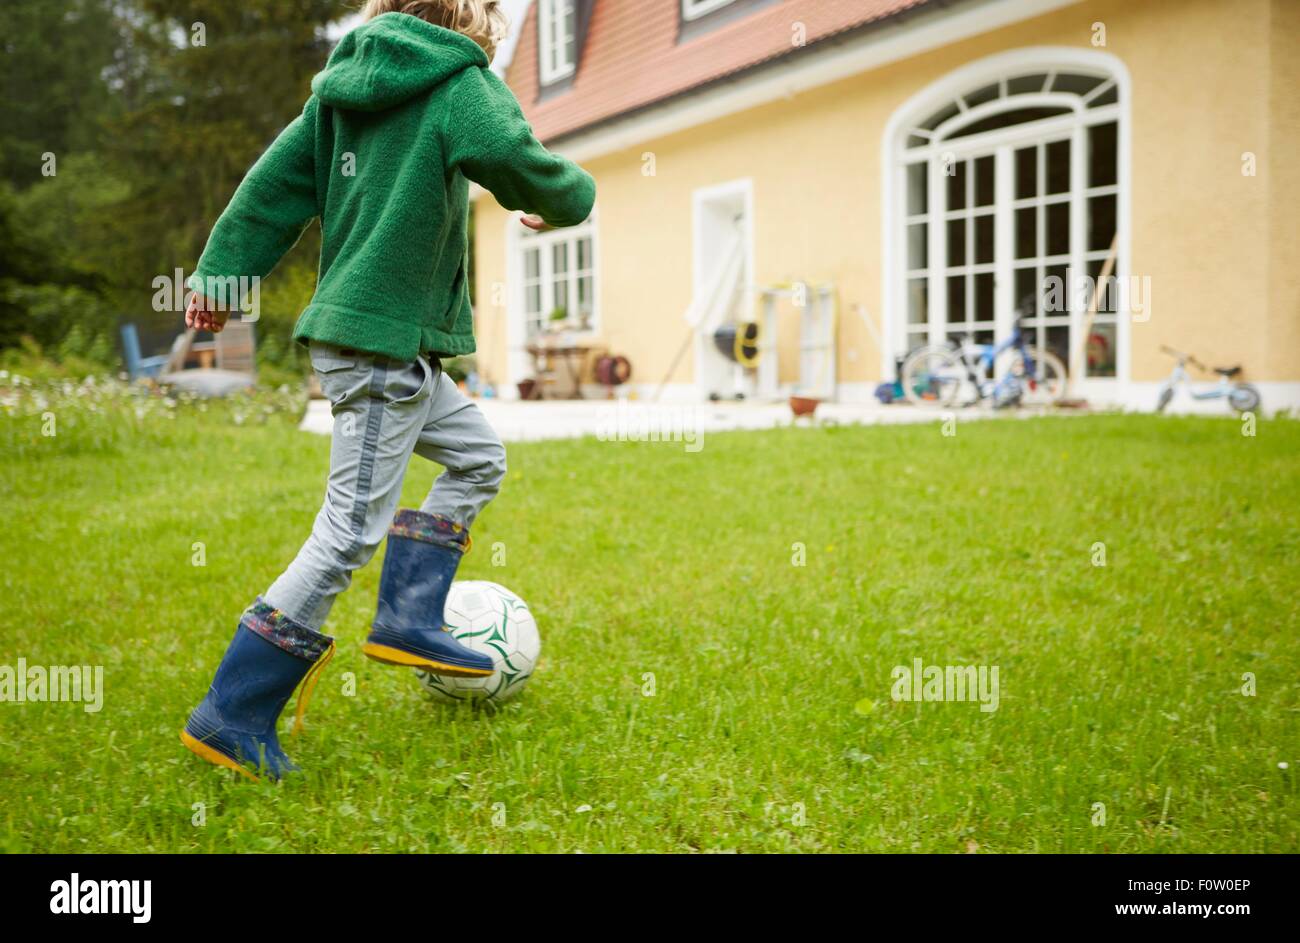 Vue arrière du boy wearing Wellington à jouer au football dans le jardin Banque D'Images